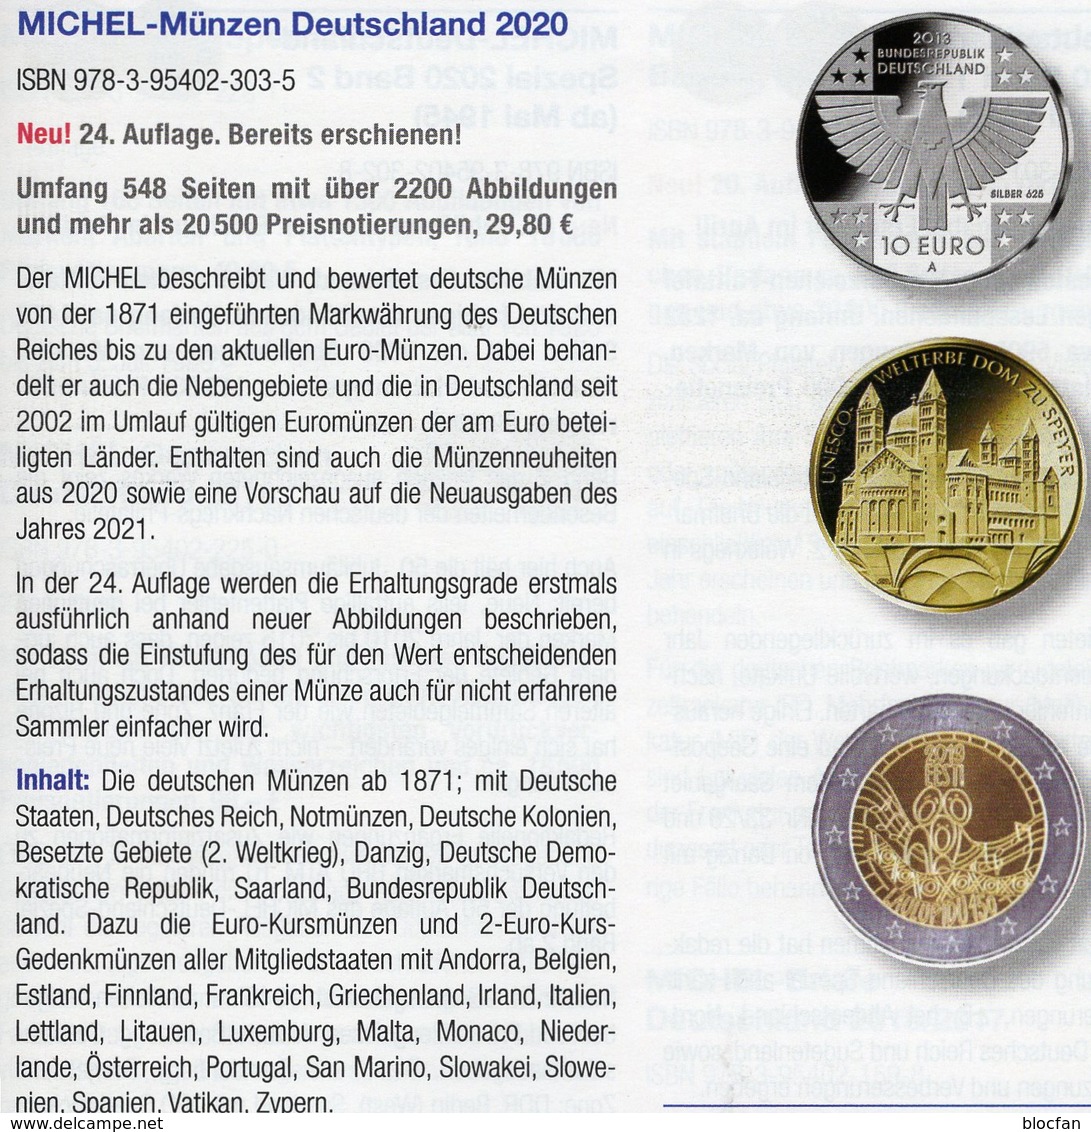 Deutschland+EURO MICHEL Münzen 2020 Neu 30€ Ab 1871 DR 3.Reich BRD DDR Numismatik Coins Catalogue 978-3-95402-303-5 - Sammeln